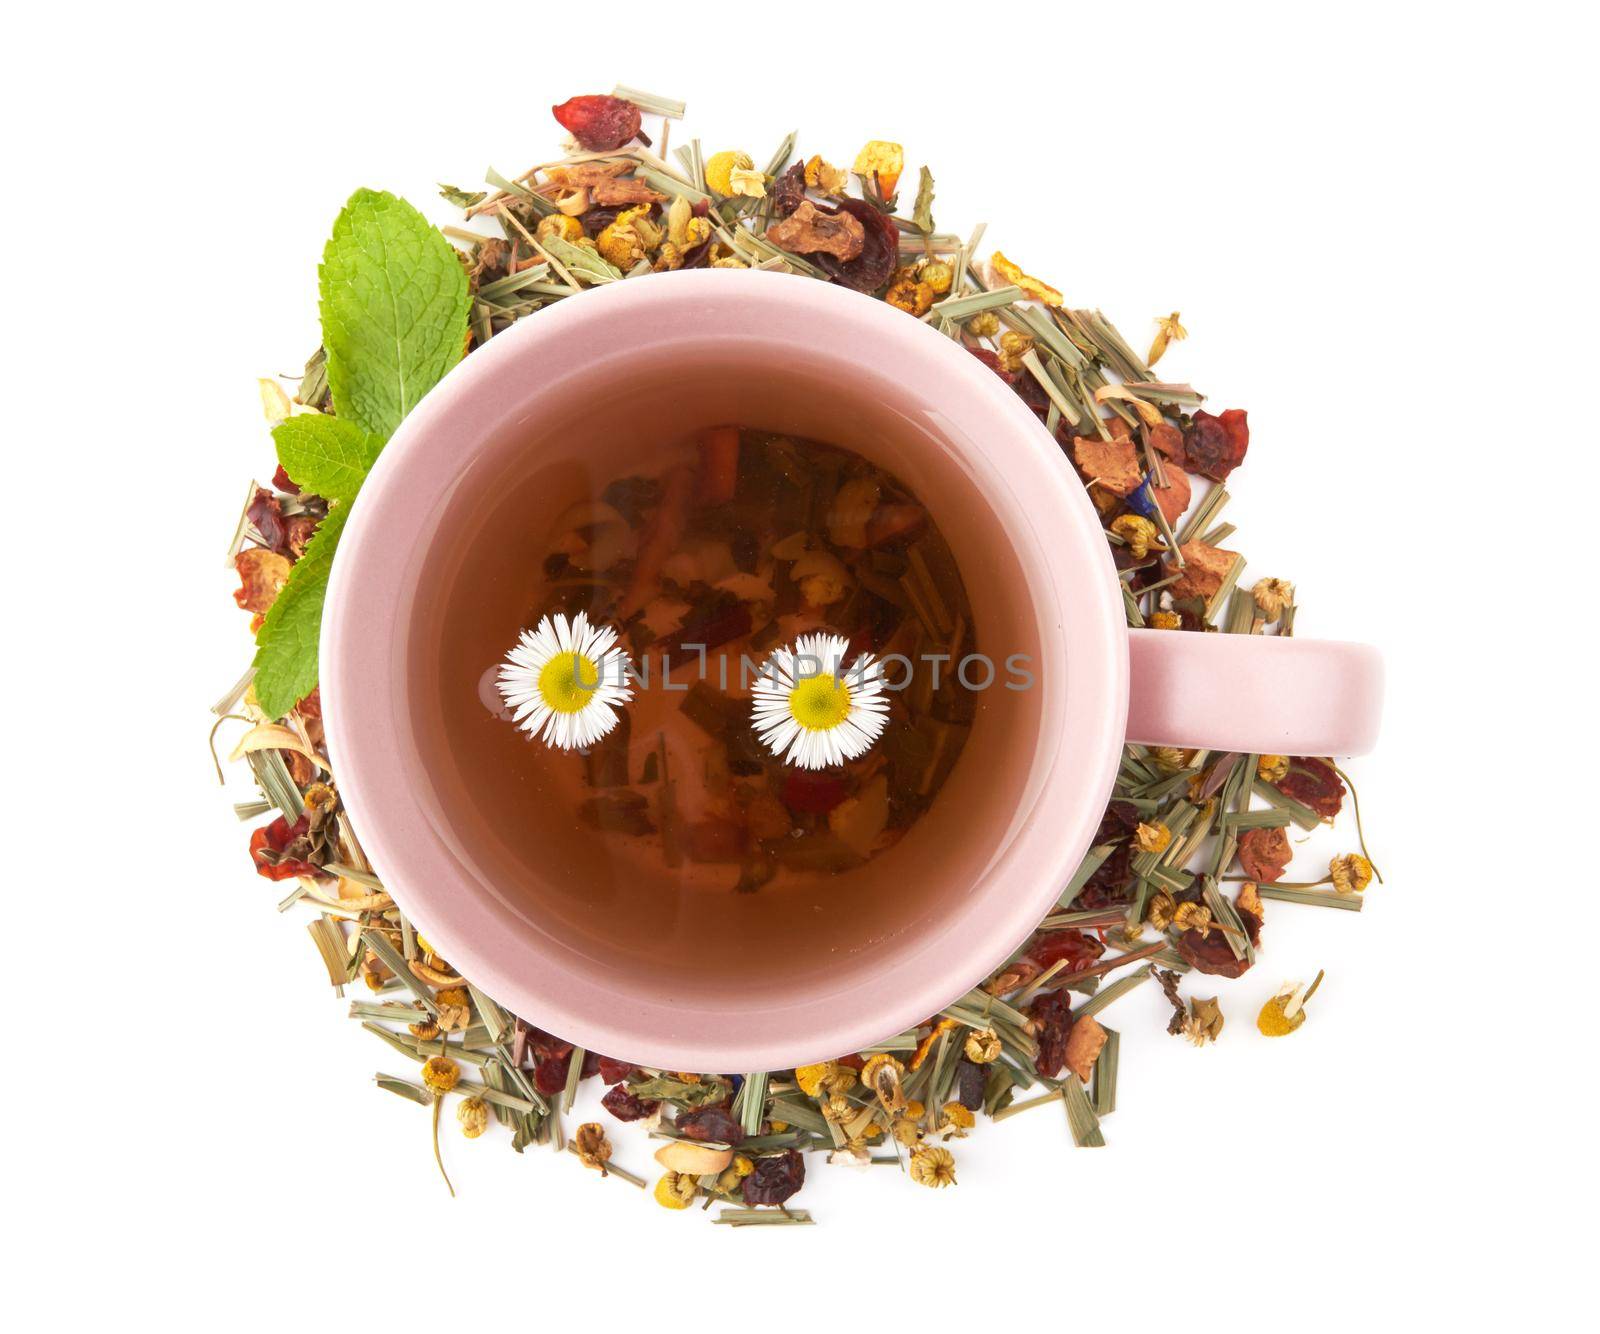 Cup of hot herbal tea by pioneer111